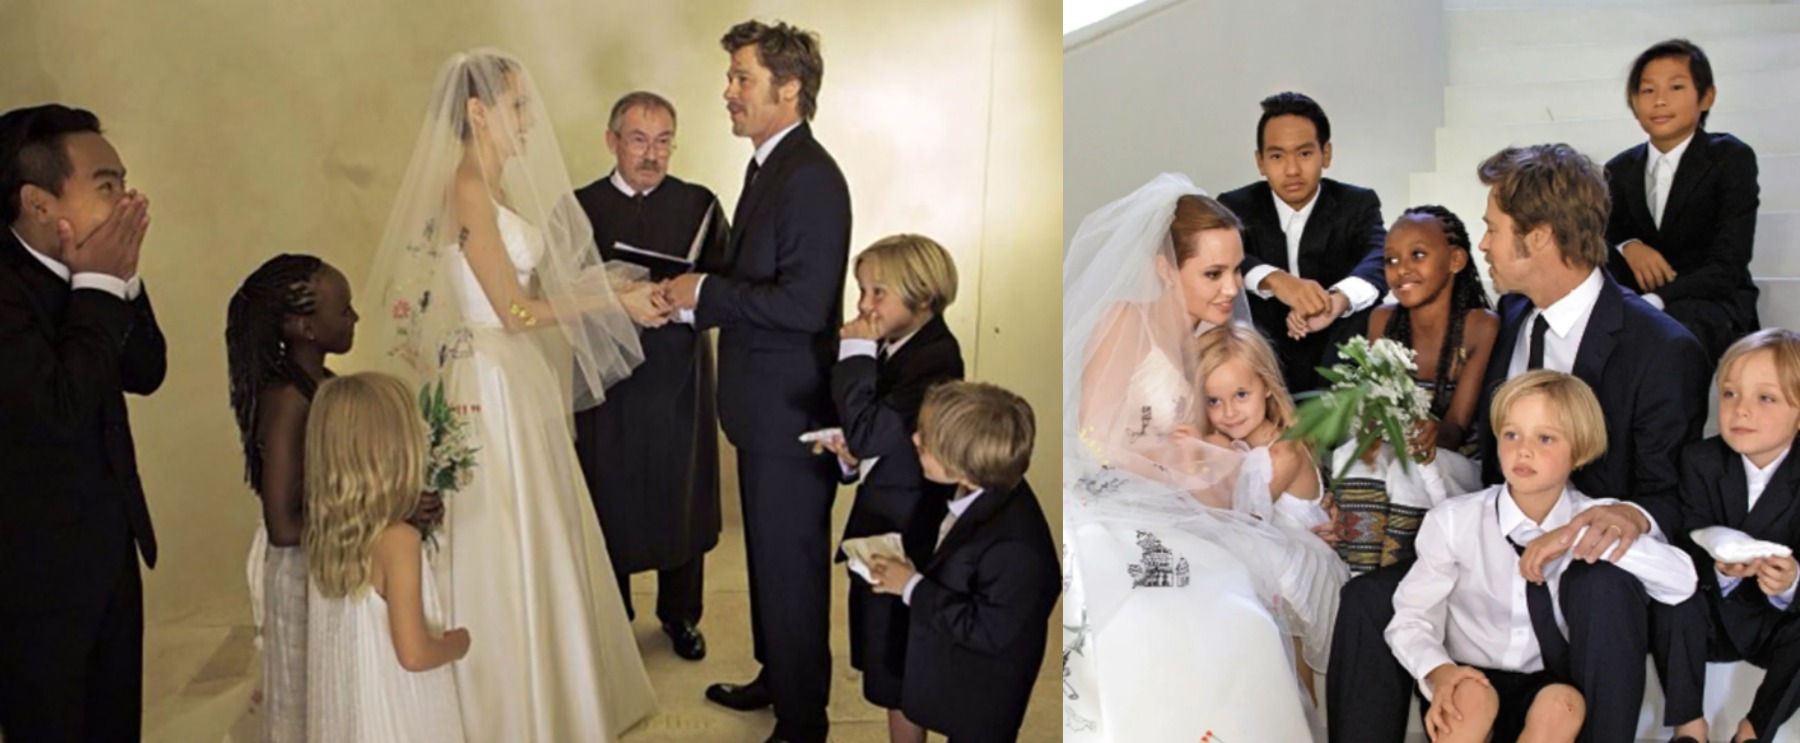 Matrimonio de Angelina Jolie y Brad Pitt 2014 | Imagen: Difusión